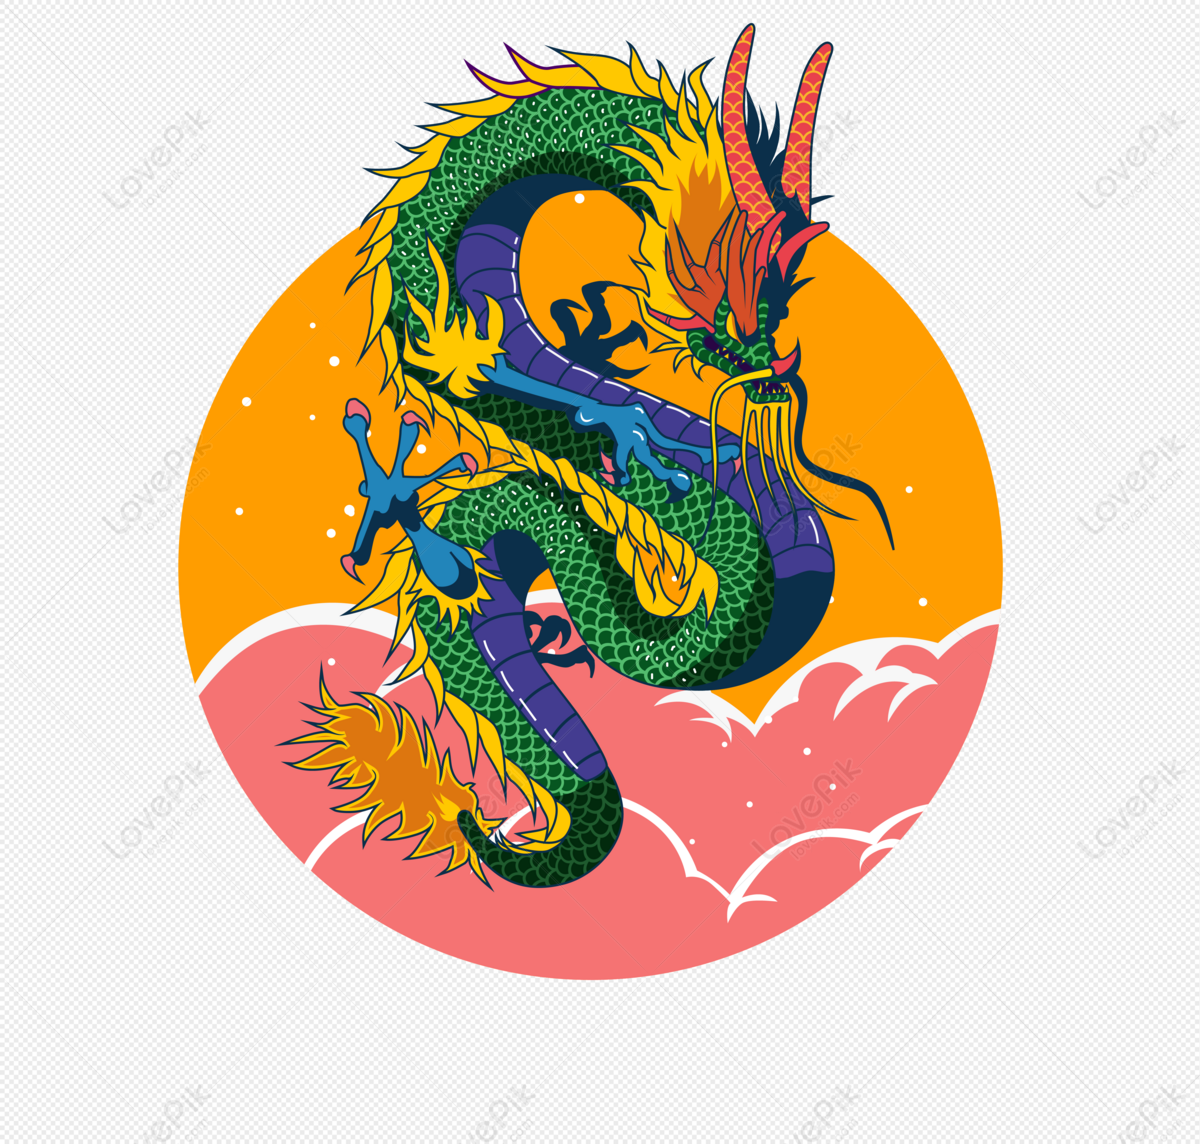 Rồng Trung Quốc - biểu tượng của vinh quang và quyền lực. Vẽ rồng Trung Quốc không chỉ đơn thuần là nghệ thuật, mà còn chứa đựng những ý nghĩa sâu sắc và tôn giáo. Hãy khám phá bí mật của rồng Trung Hoa và tạo ra một tác phẩm tuyệt vời cho bản thân!